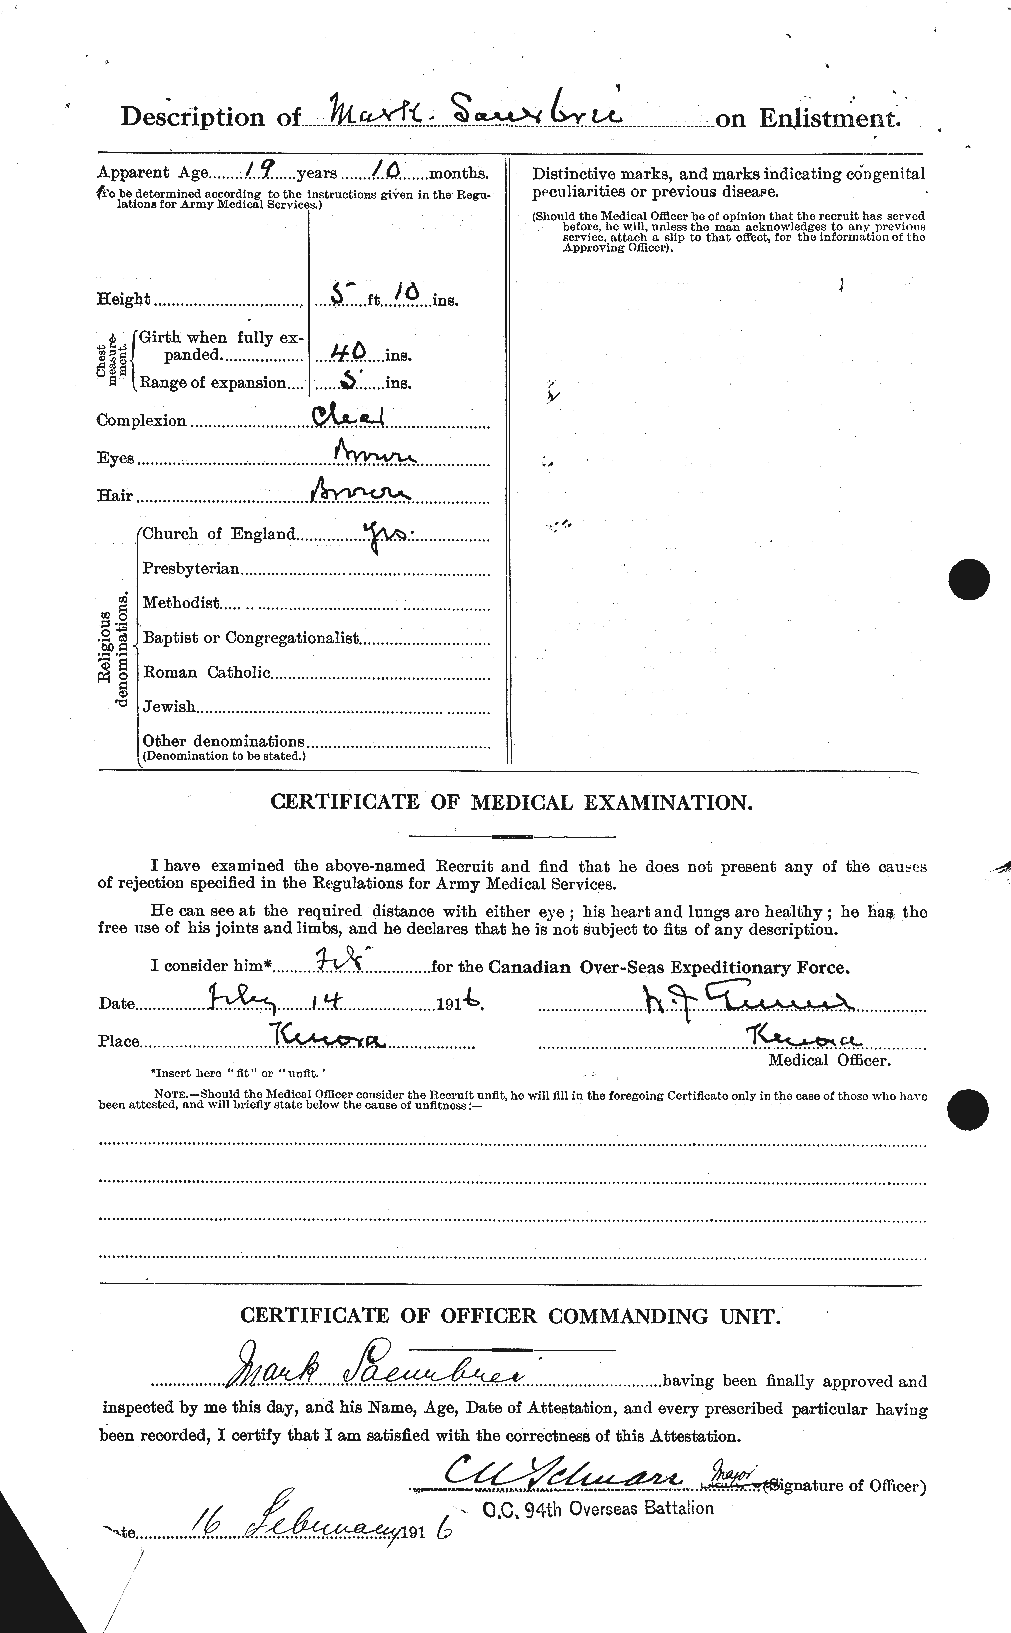 Dossiers du Personnel de la Première Guerre mondiale - CEC 082943b